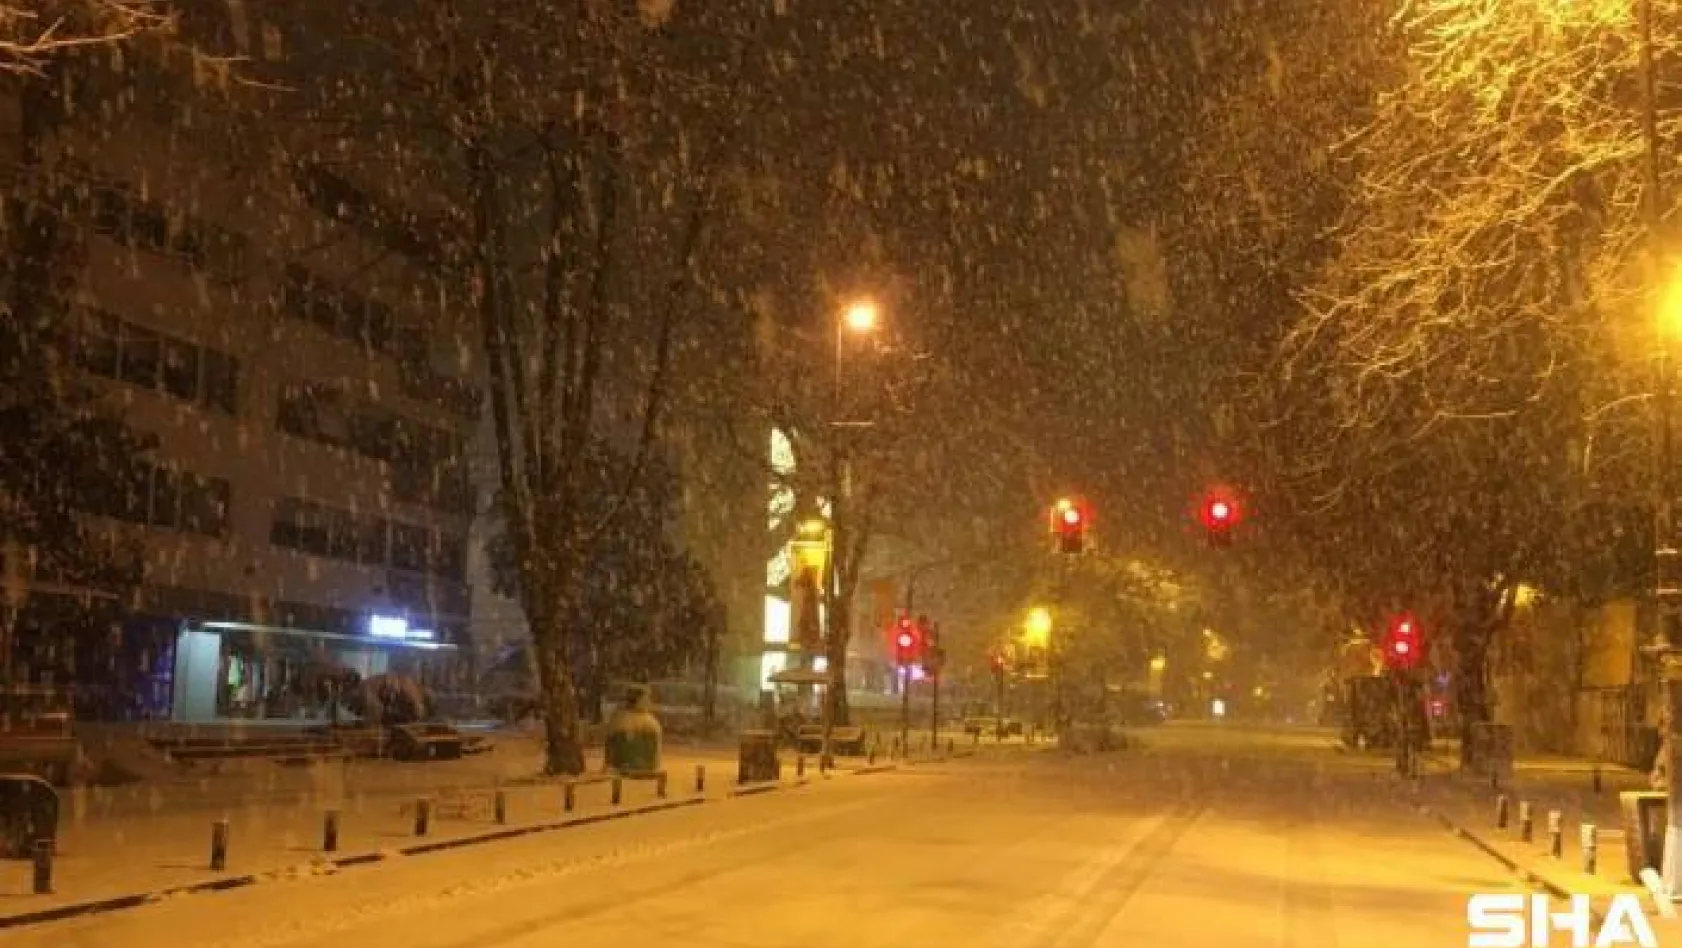 Yoğun kar yağışının devam ettiği Anadolu Yakasında Bağdat Caddesi beyaza büründü